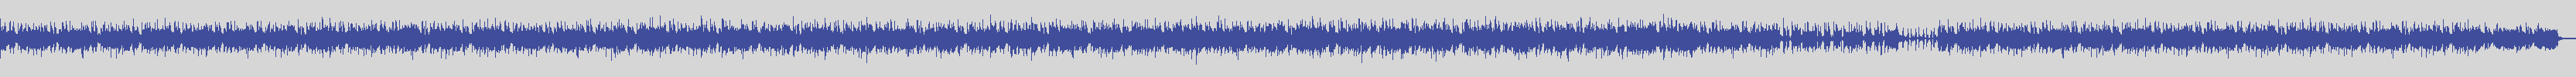 noclouds_chillout [NOC111] Pianissimo - Export Sound [Original Mix] audio wave form